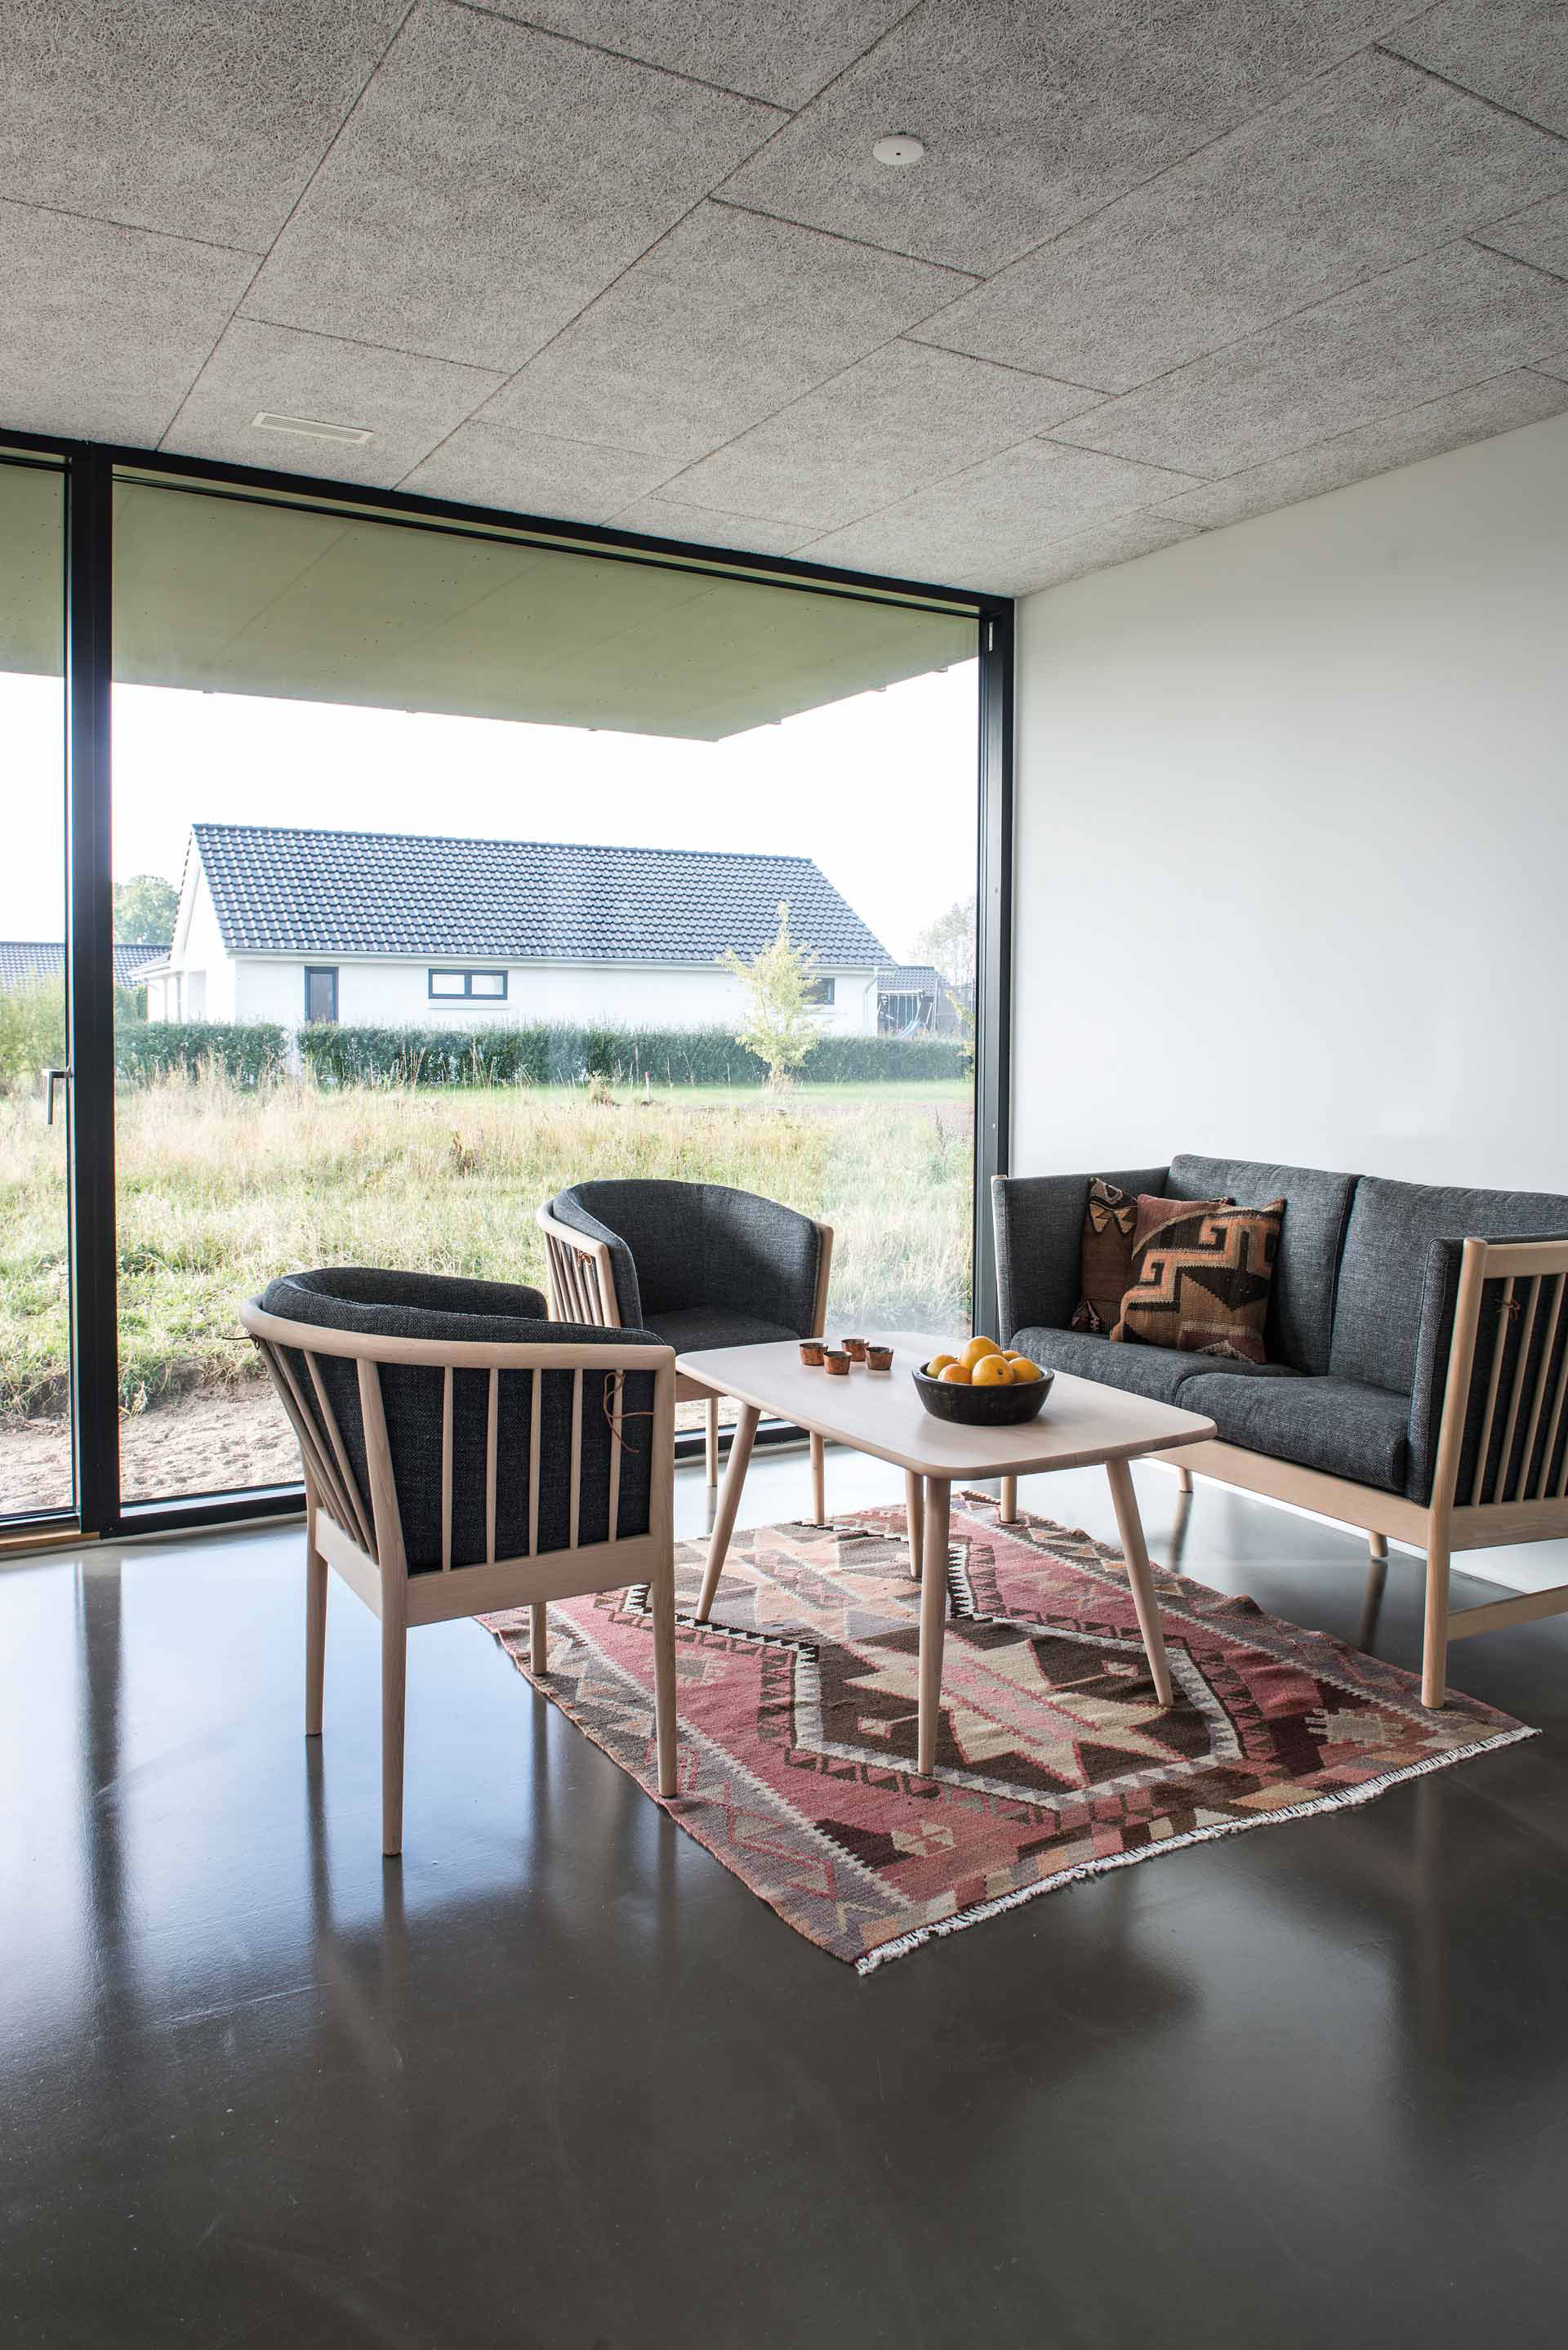 Projekt MiniCO2 Houses pozostáva zo 6 rodinných domov postavených v Dánskom meste Nyborg. 5 z týchto domov je zameraných na určité metódy zníženia emisií CO2 (recyklované materiály, bezúdržbové systémy, inteligentná regulácia vykurovania, ohrevu vody a podobne) a šiesty má skombinovať tieto metódy dohromady.